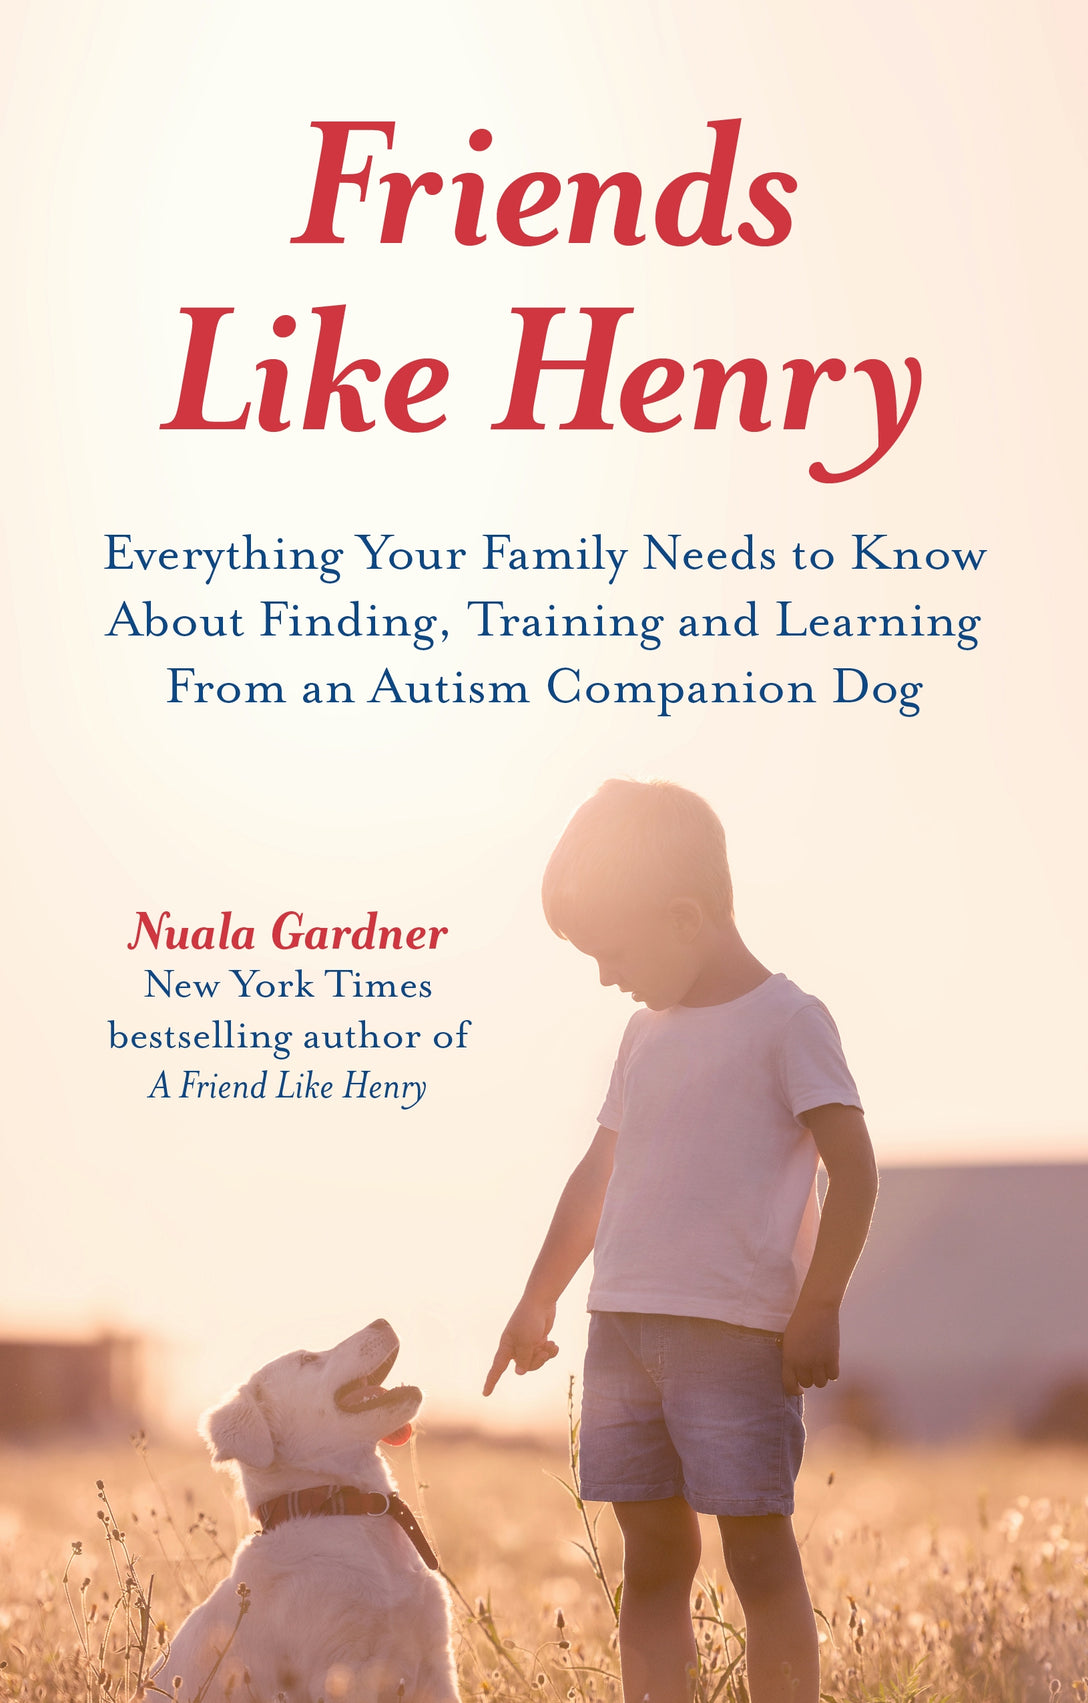 Friends like Henry by Nuala Gardner